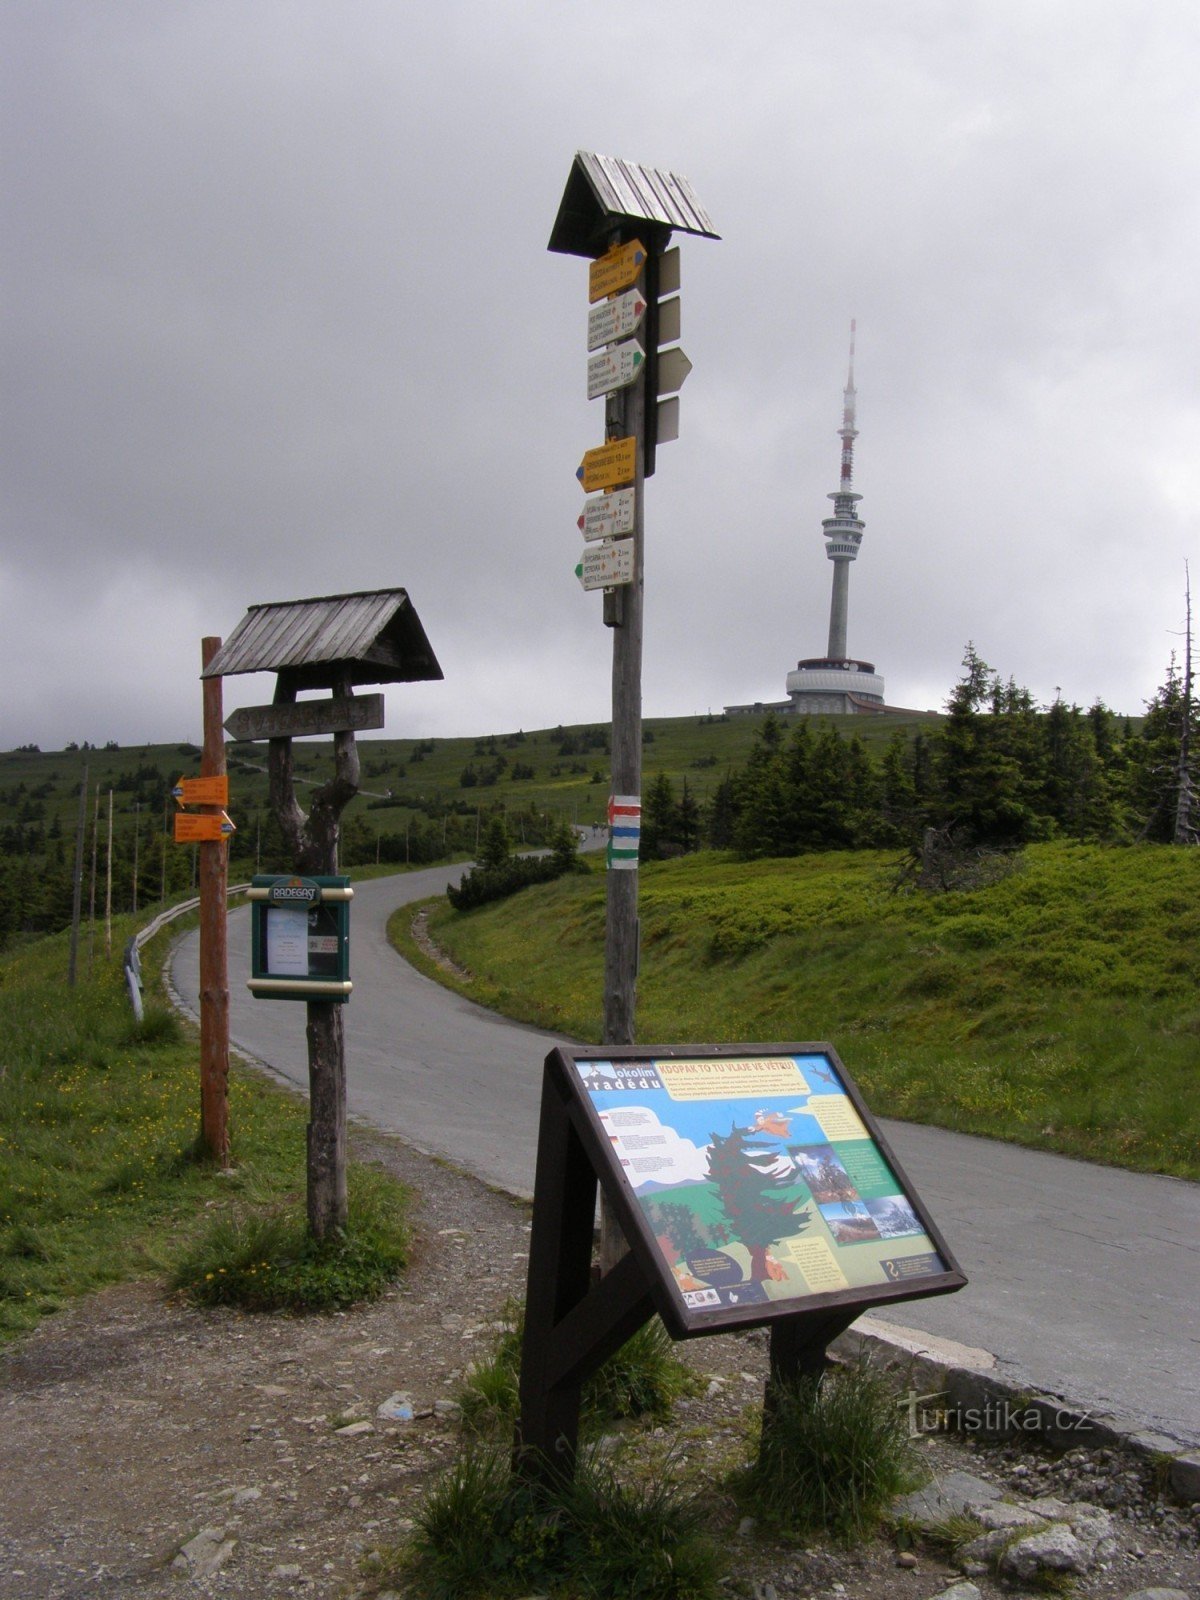 τουριστικό σταυροδρόμι - Praděd, σταυροδρόμι κάτω από την κορυφή